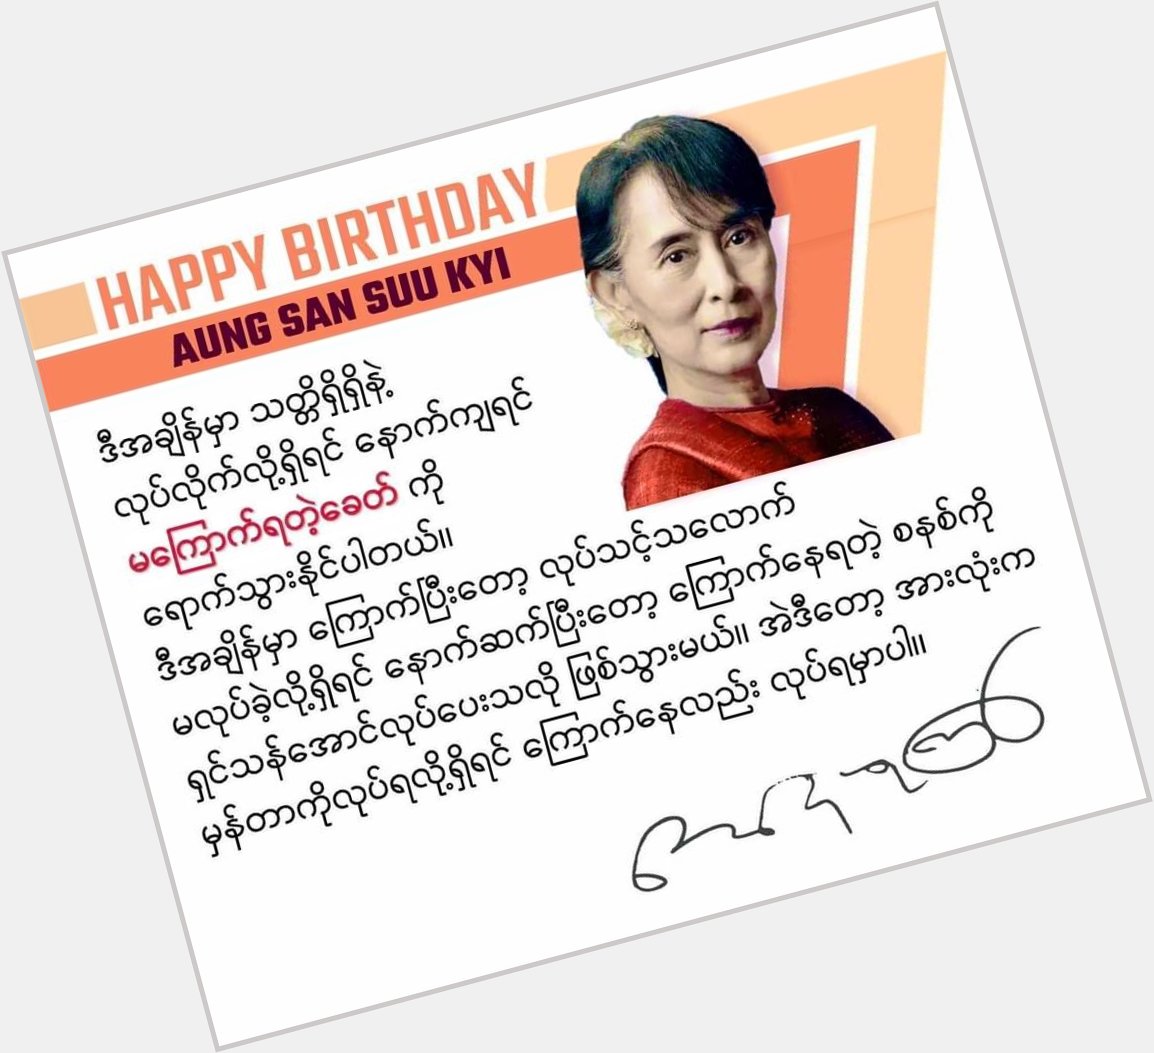 Happy 77th Birthday Mom Su.
Happy Birthday Our Leader. 
Happy Birthday Daw Aung San Suu Kyi. 